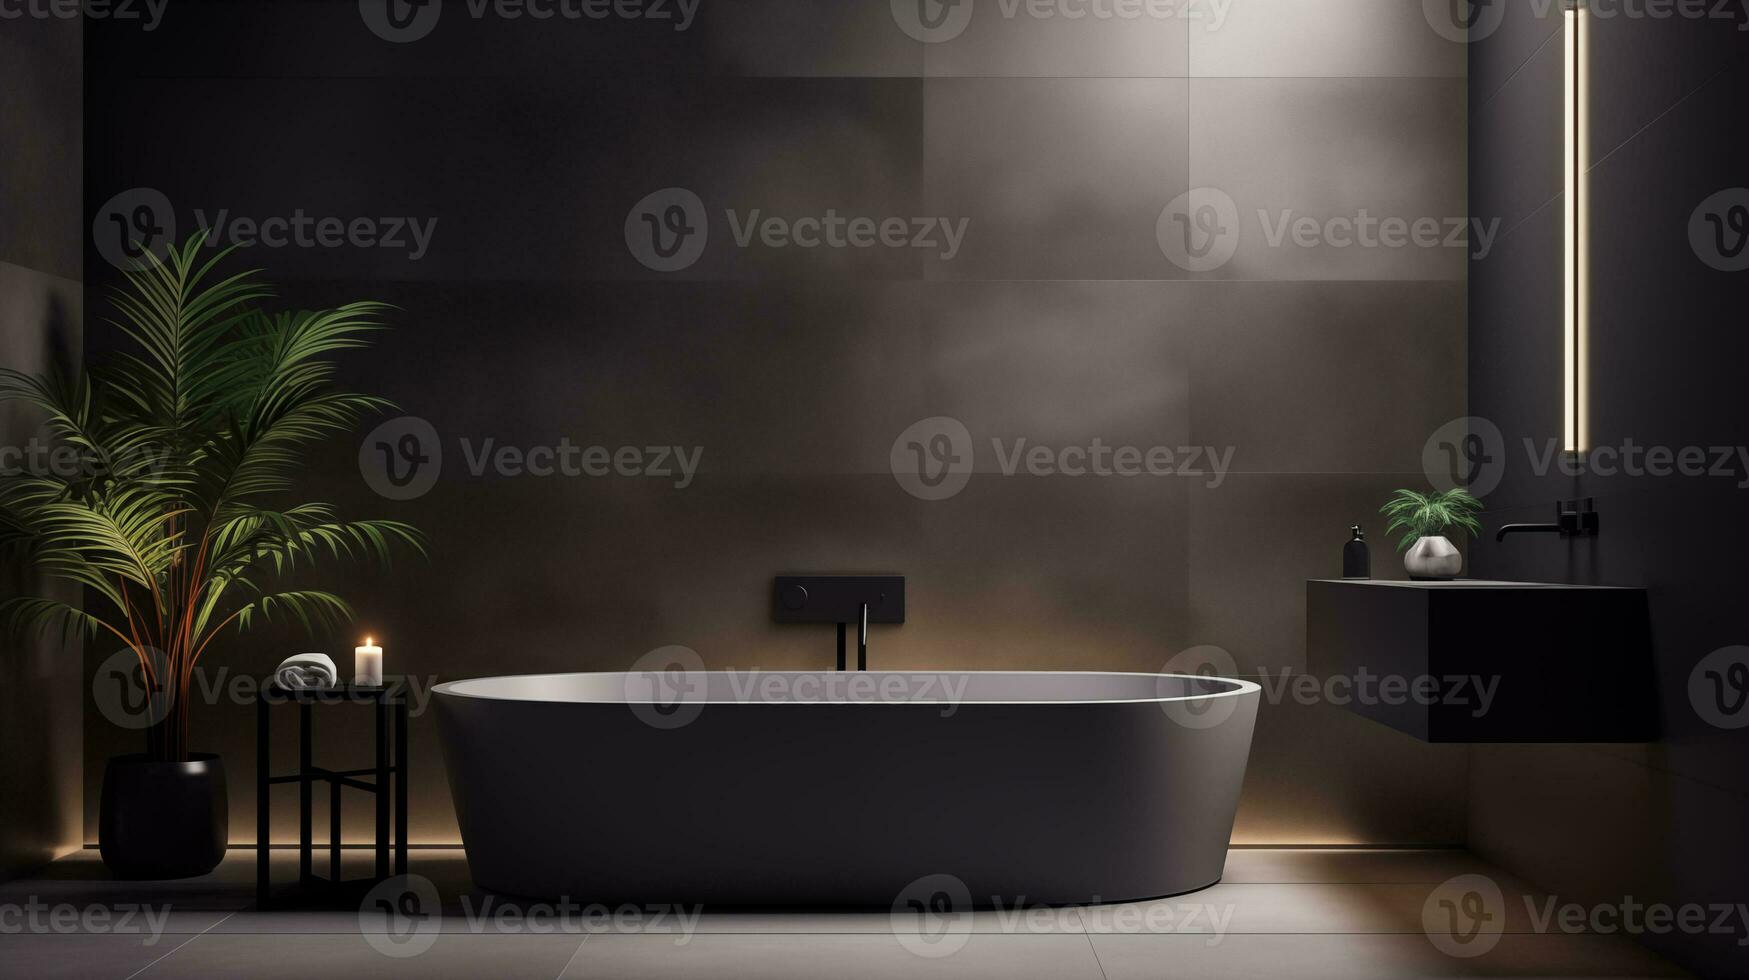 AI generated A dark minimalist bathroom with a sleek bathroom photo